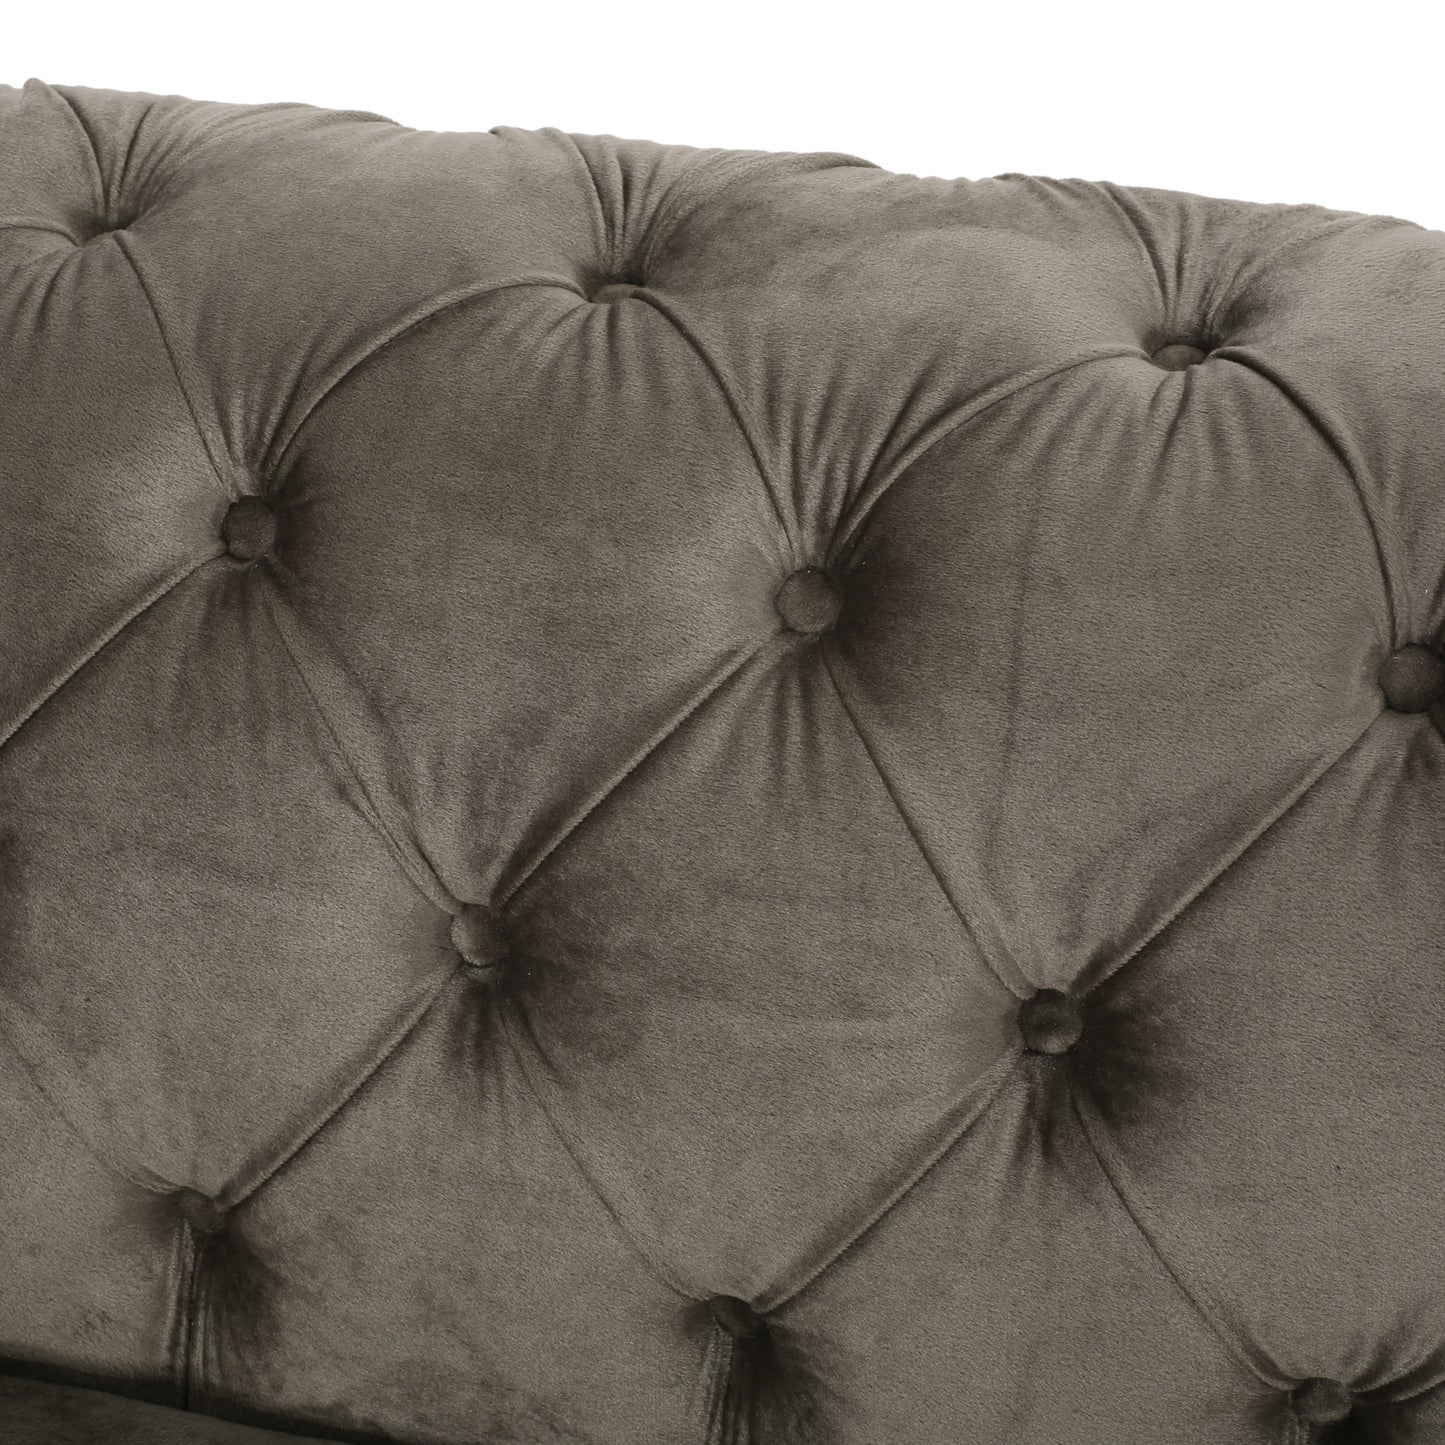 Giovanna Modern Glam Tufted Velvet 3 Seater Sofa